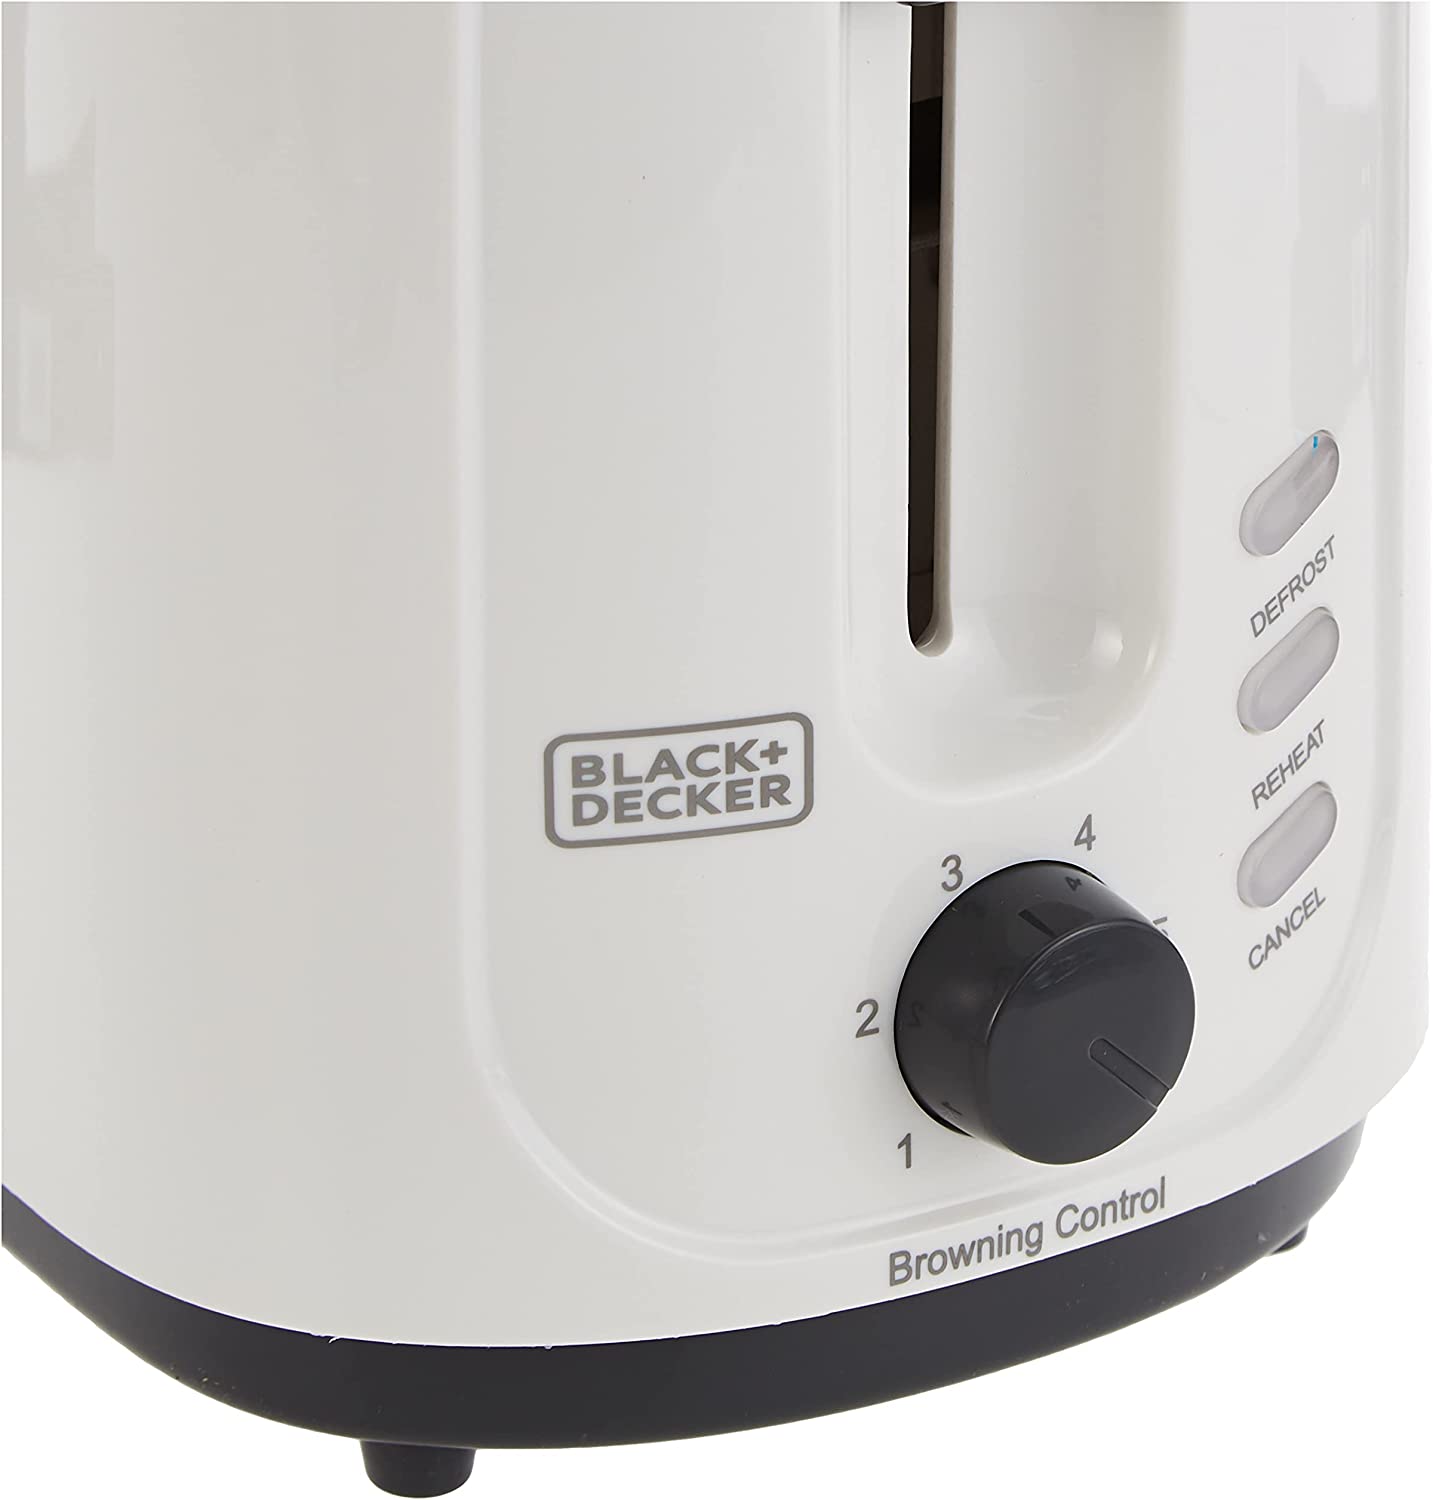 Black & Decker 2-slice toaster, 750 watts 